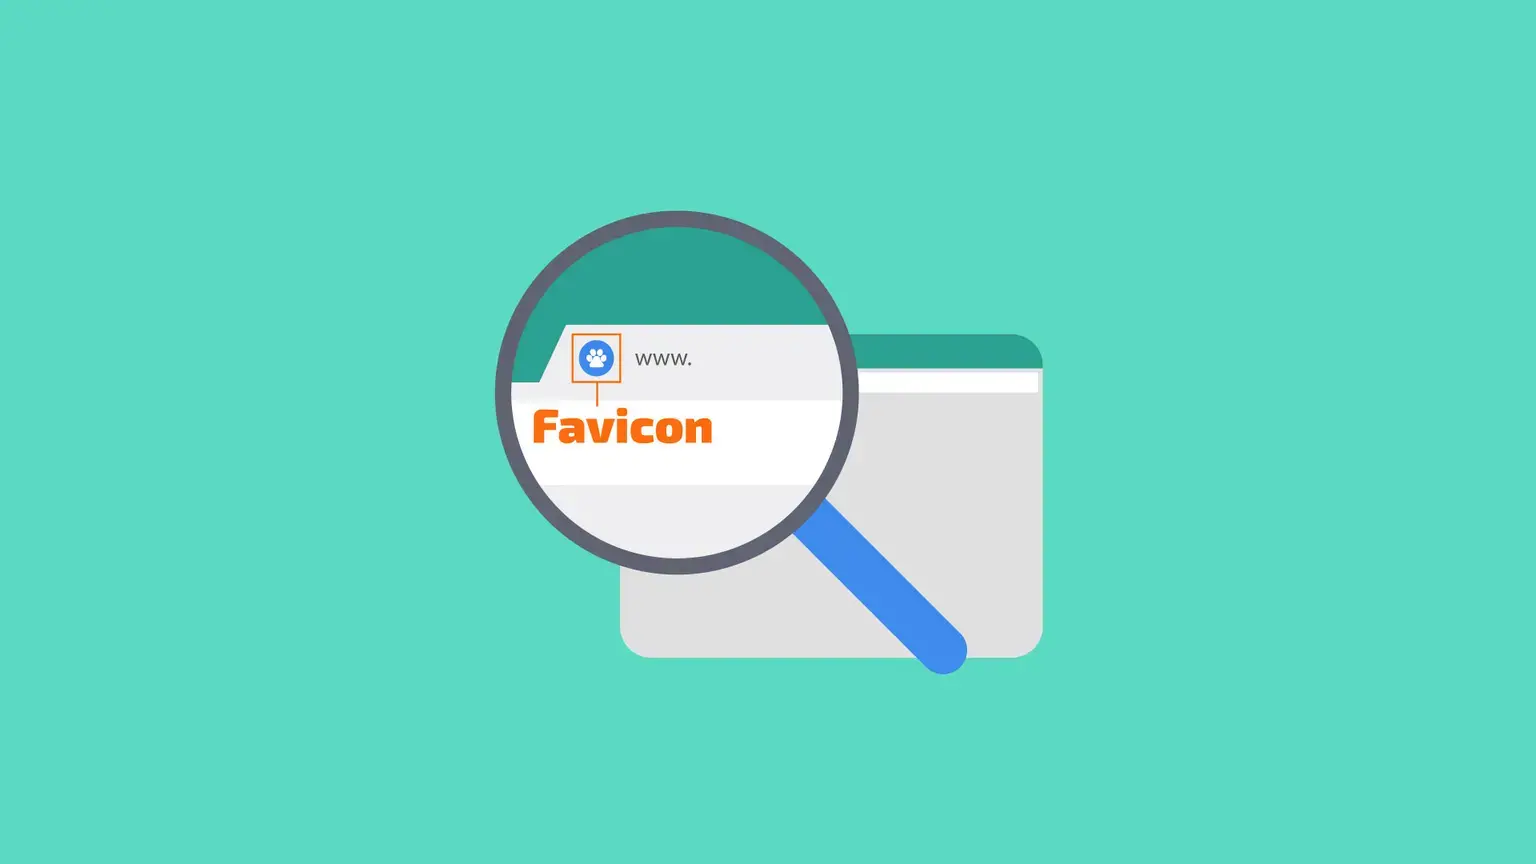 فاوآیکون Favicon چیست؟ اهمیت و کاربرد فاو آیکن کدام است؟